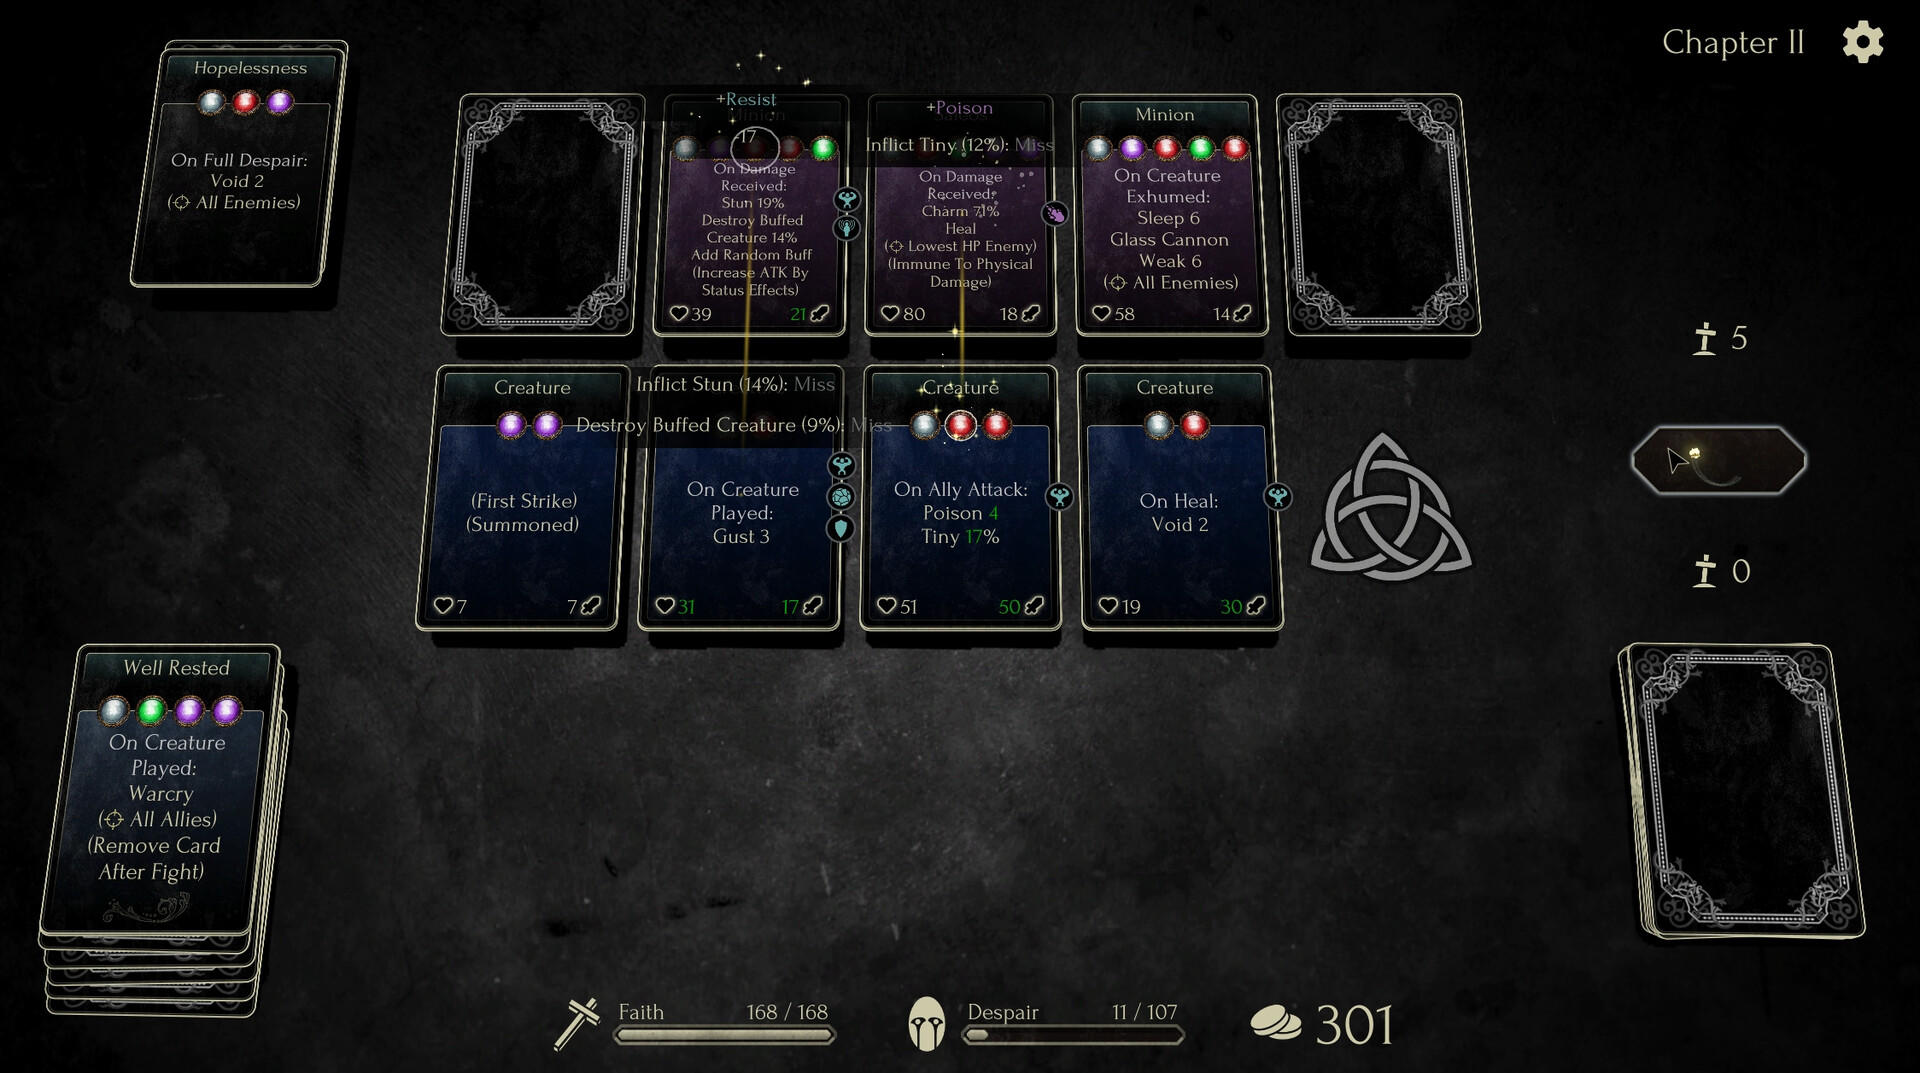 Faith in Despair screenshot game